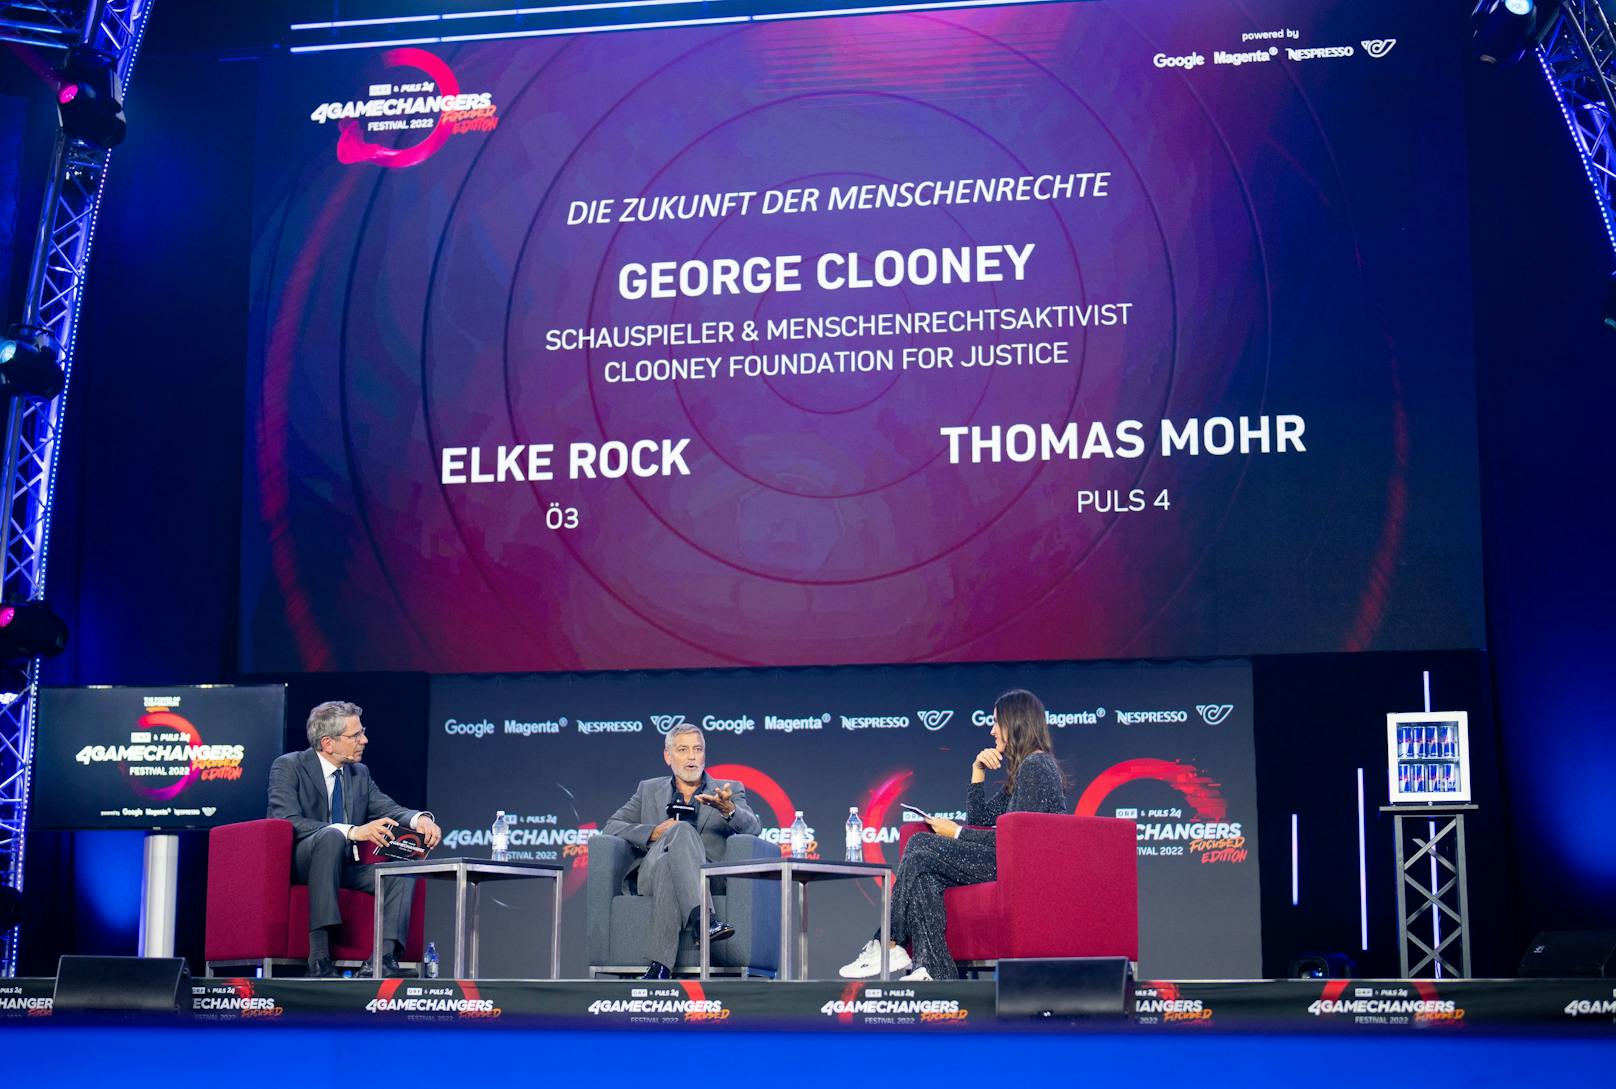 Thomas Mohr (PULS 4), Schauspieler und Menschenrechtsaktivist George Clooney und Elke Rock (Ö3) am Donnerstag, 30. Juni 2022, im Rahmen eines Interviews anl. dem "4GAMECHANGERS Festival 2022" in Wien.&nbsp;